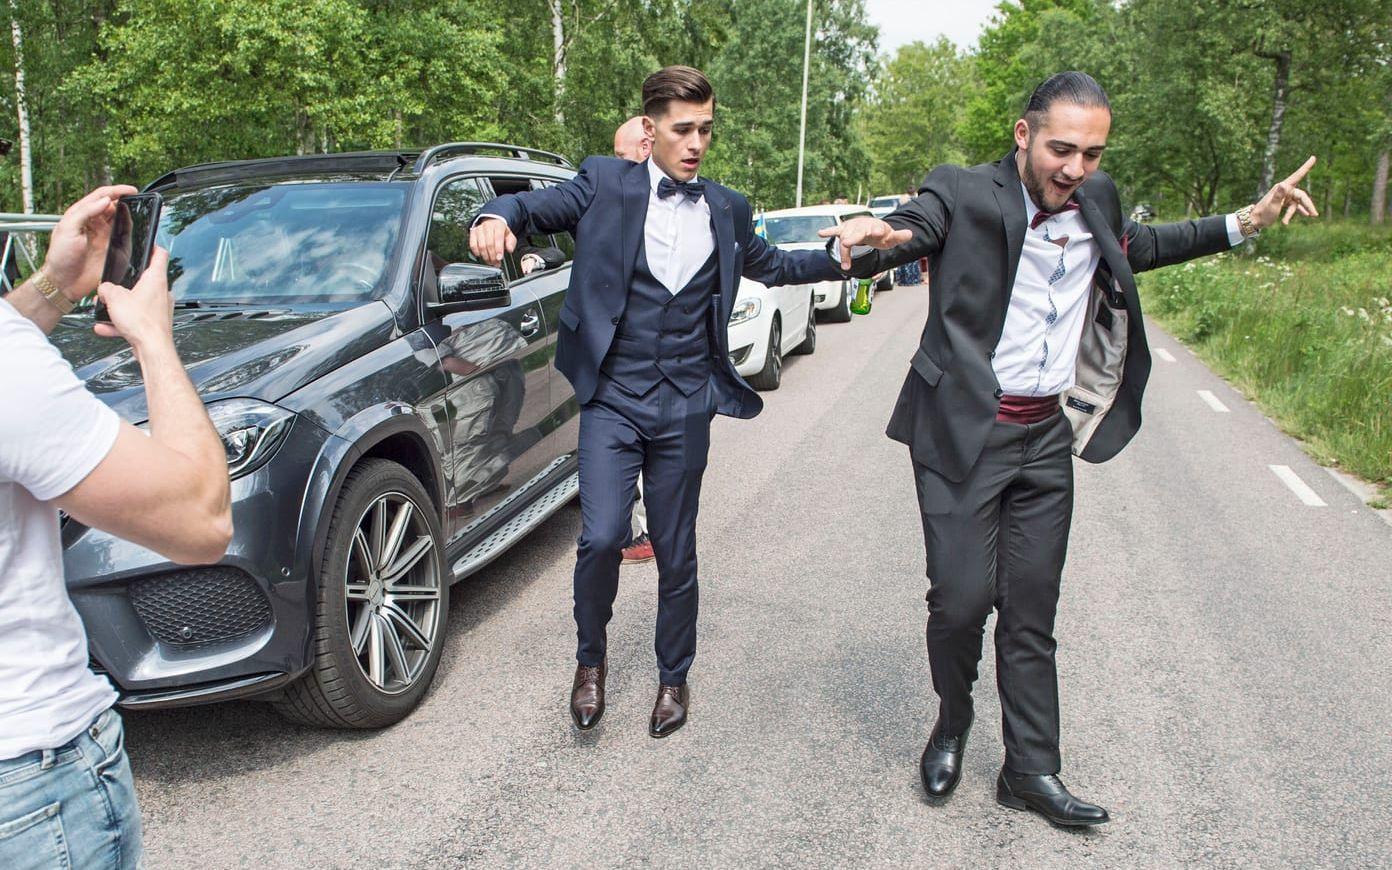 – Vänta, vänta, nu kommer droppet. Fatmir Haliti och Kaes Ahmad var peppade inför balen och hade svårt att stå stilla när basen drog i gång på bilstereon. Bild: Jari Välitalo